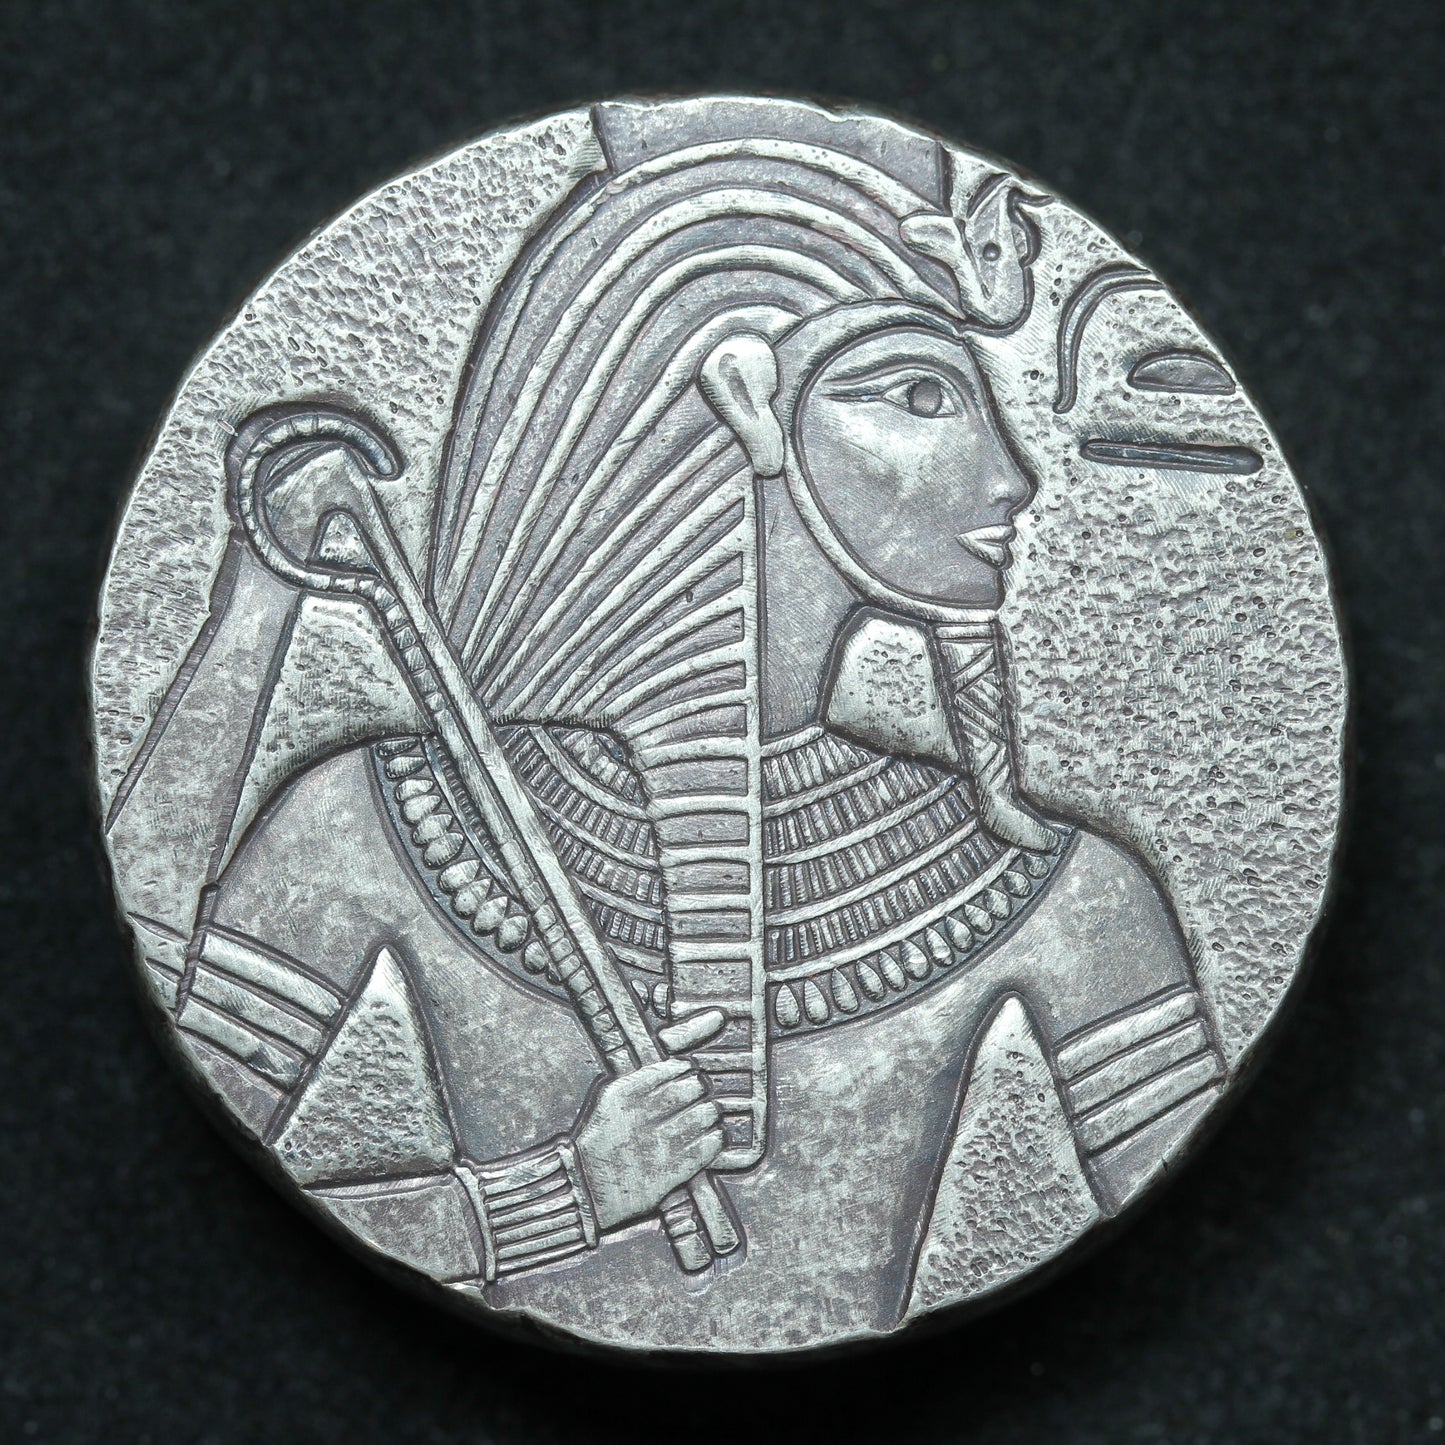 5 oz .999 Fine Silver Round - 2016 King Tut Egyptian Relic Series - Scottsdale (#2)